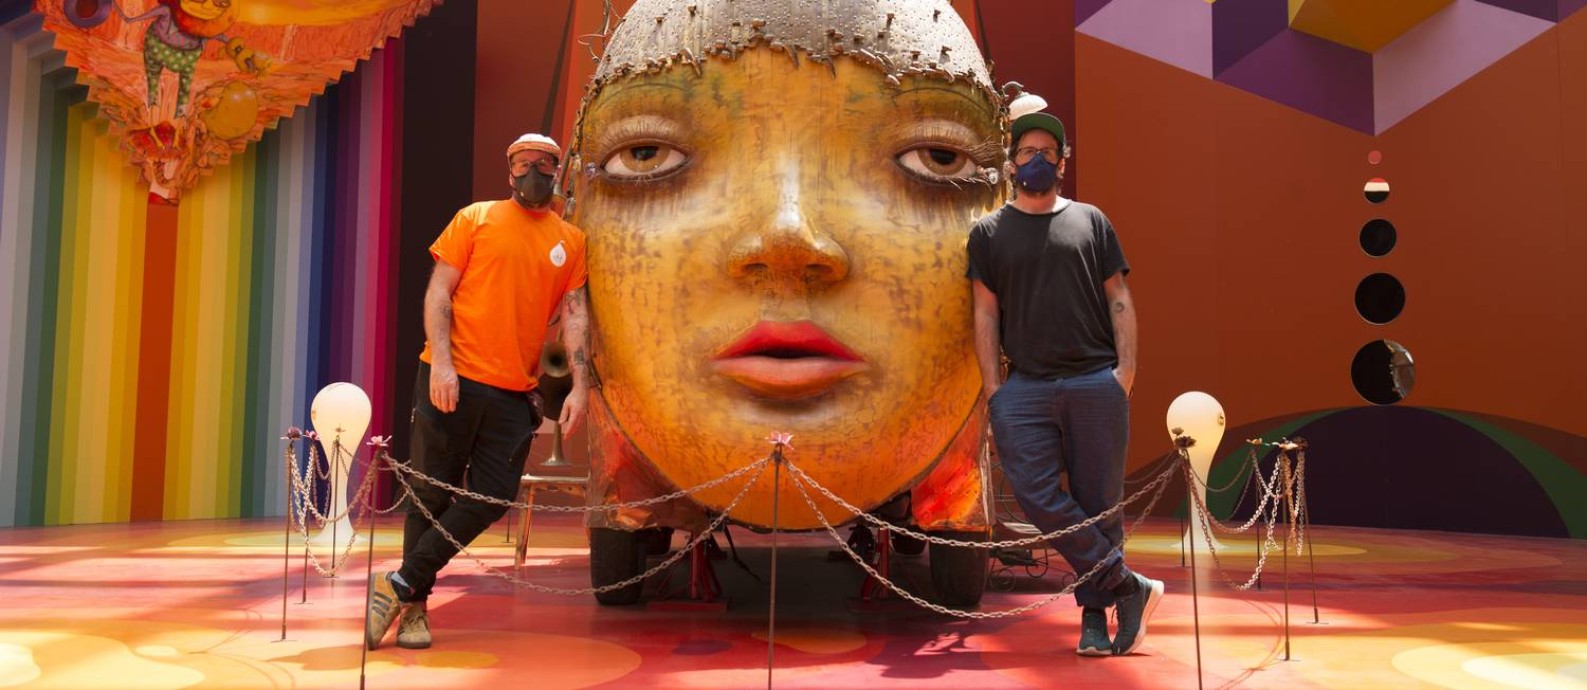 Osgemeos na instalação "Portal", criada para o octógono da Pinacoteca, em São Paulo; obra é uma das inéditas da exposição "Osgemeos: Segredos" Foto: Levi Fanan / Divulgação